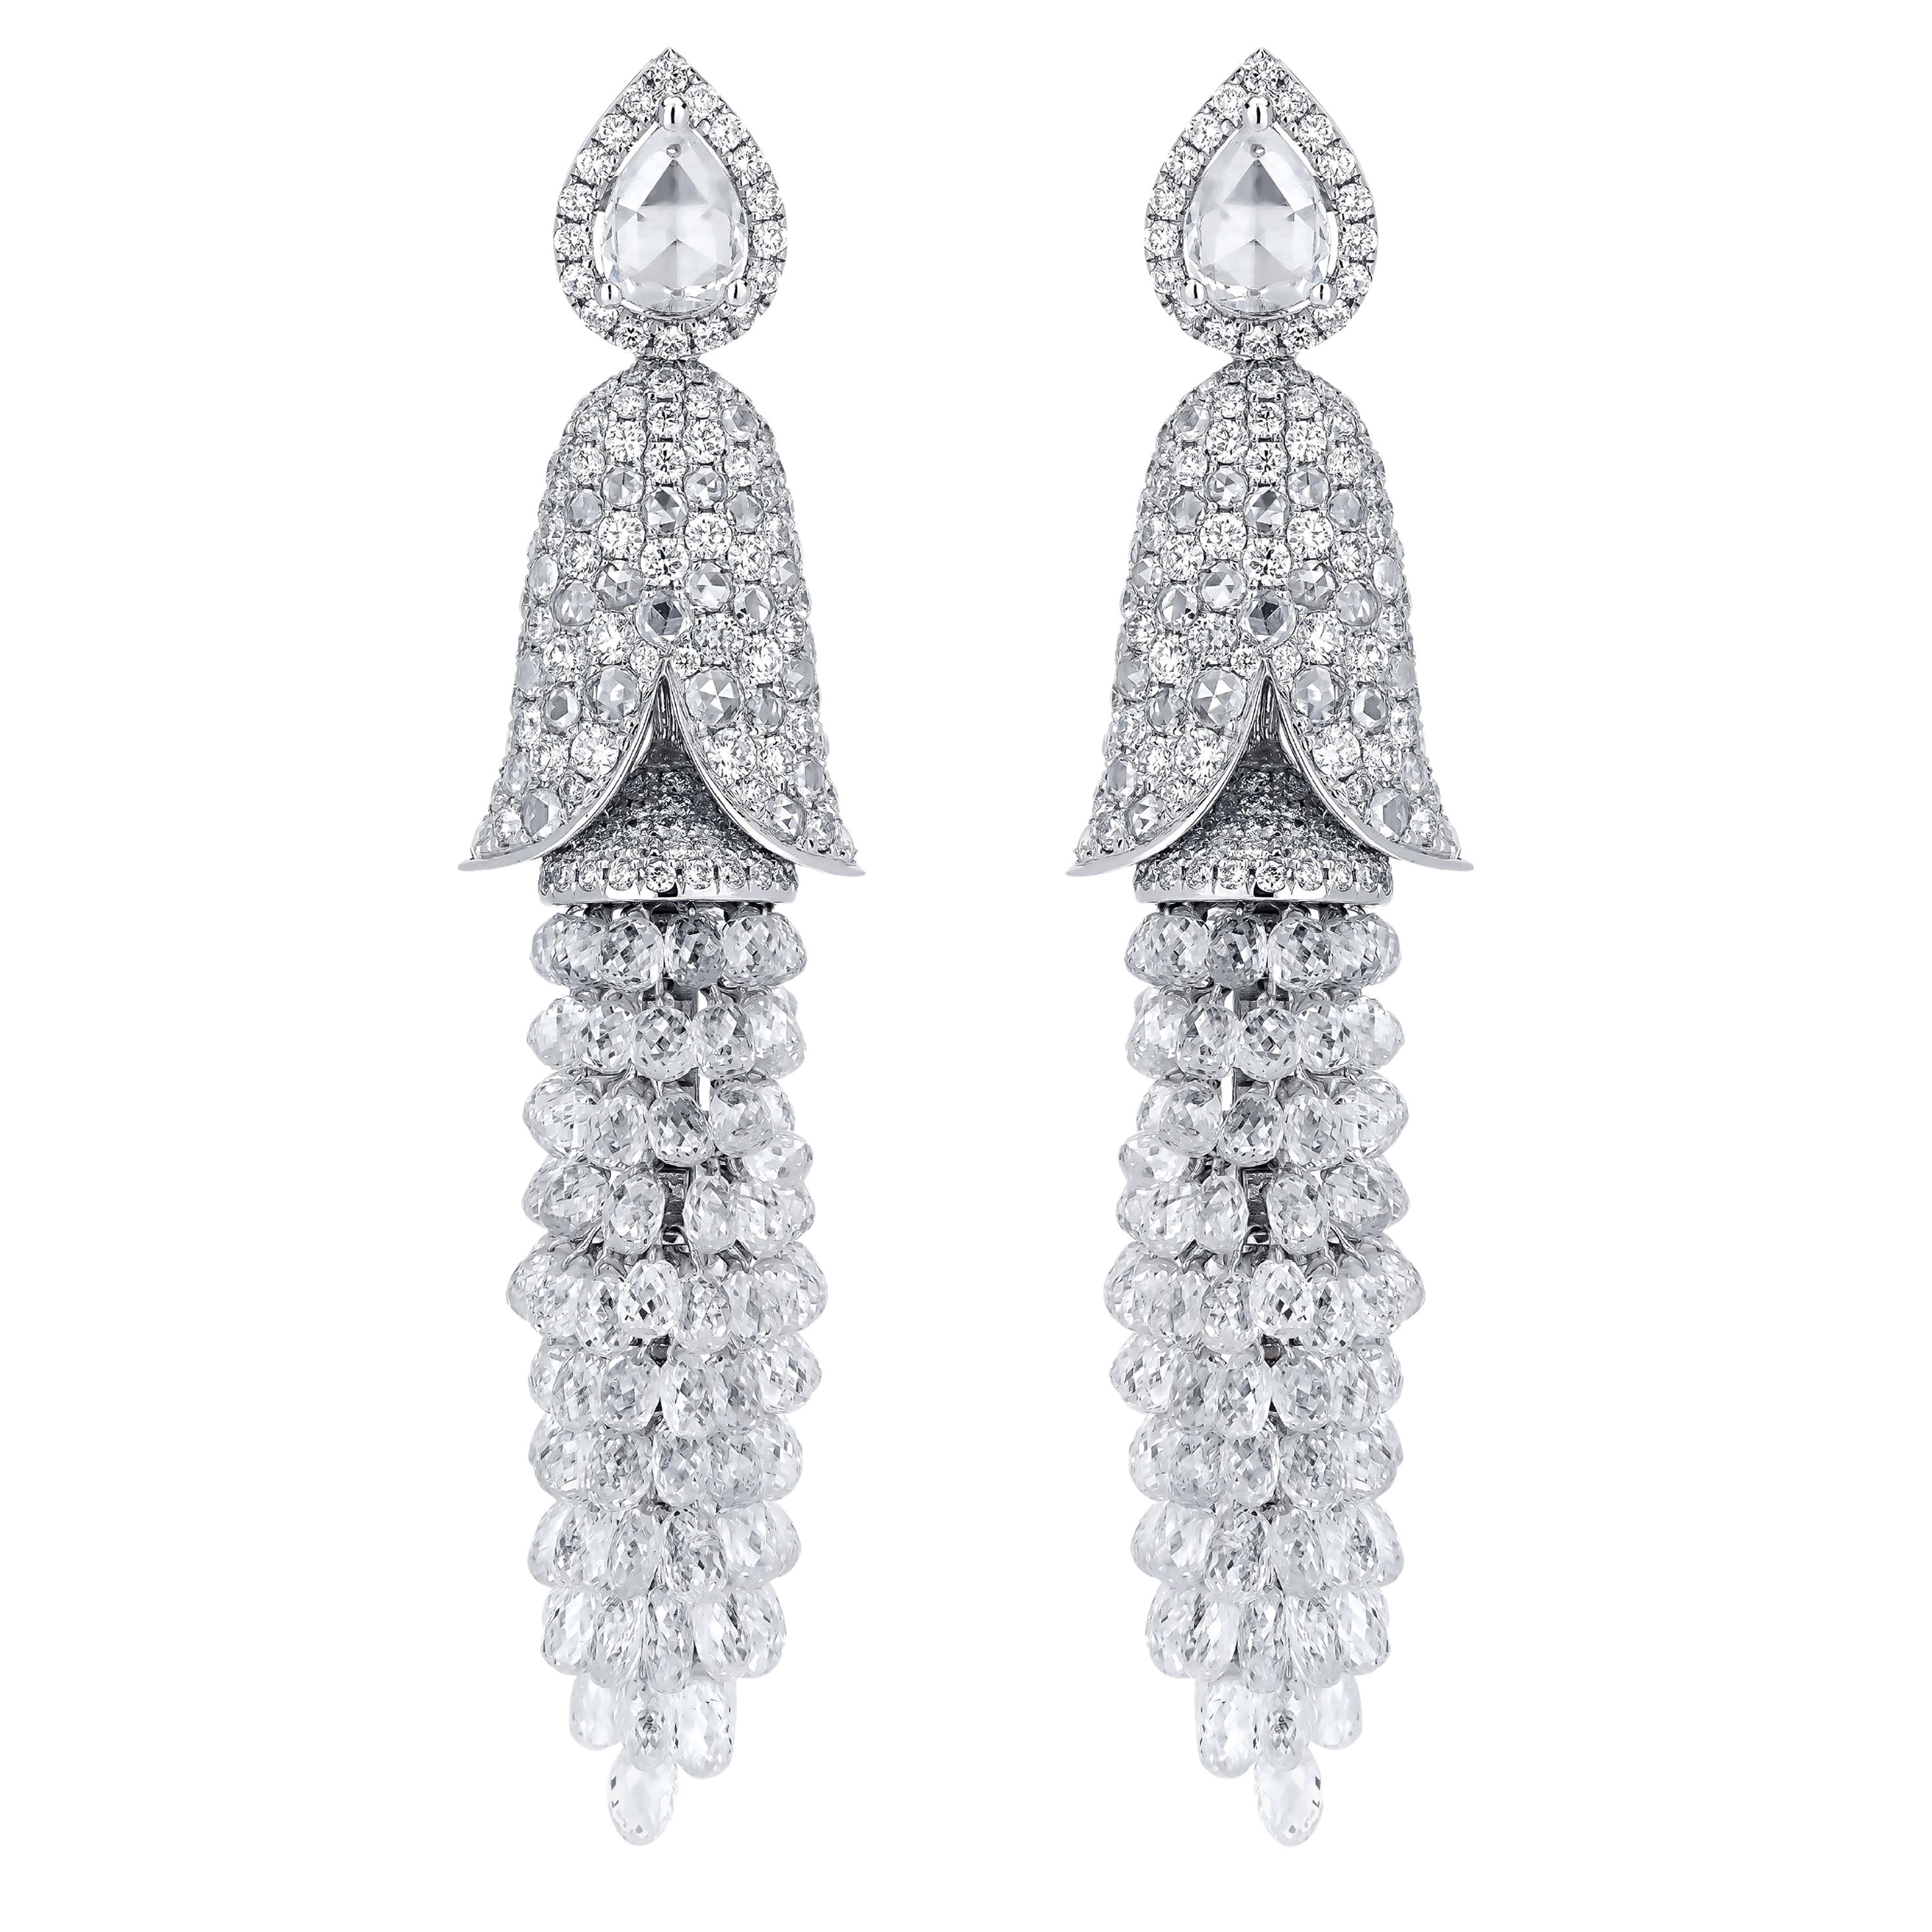 Briolette Cut Drop Diamond Dangle Earrings in 18k White Gold